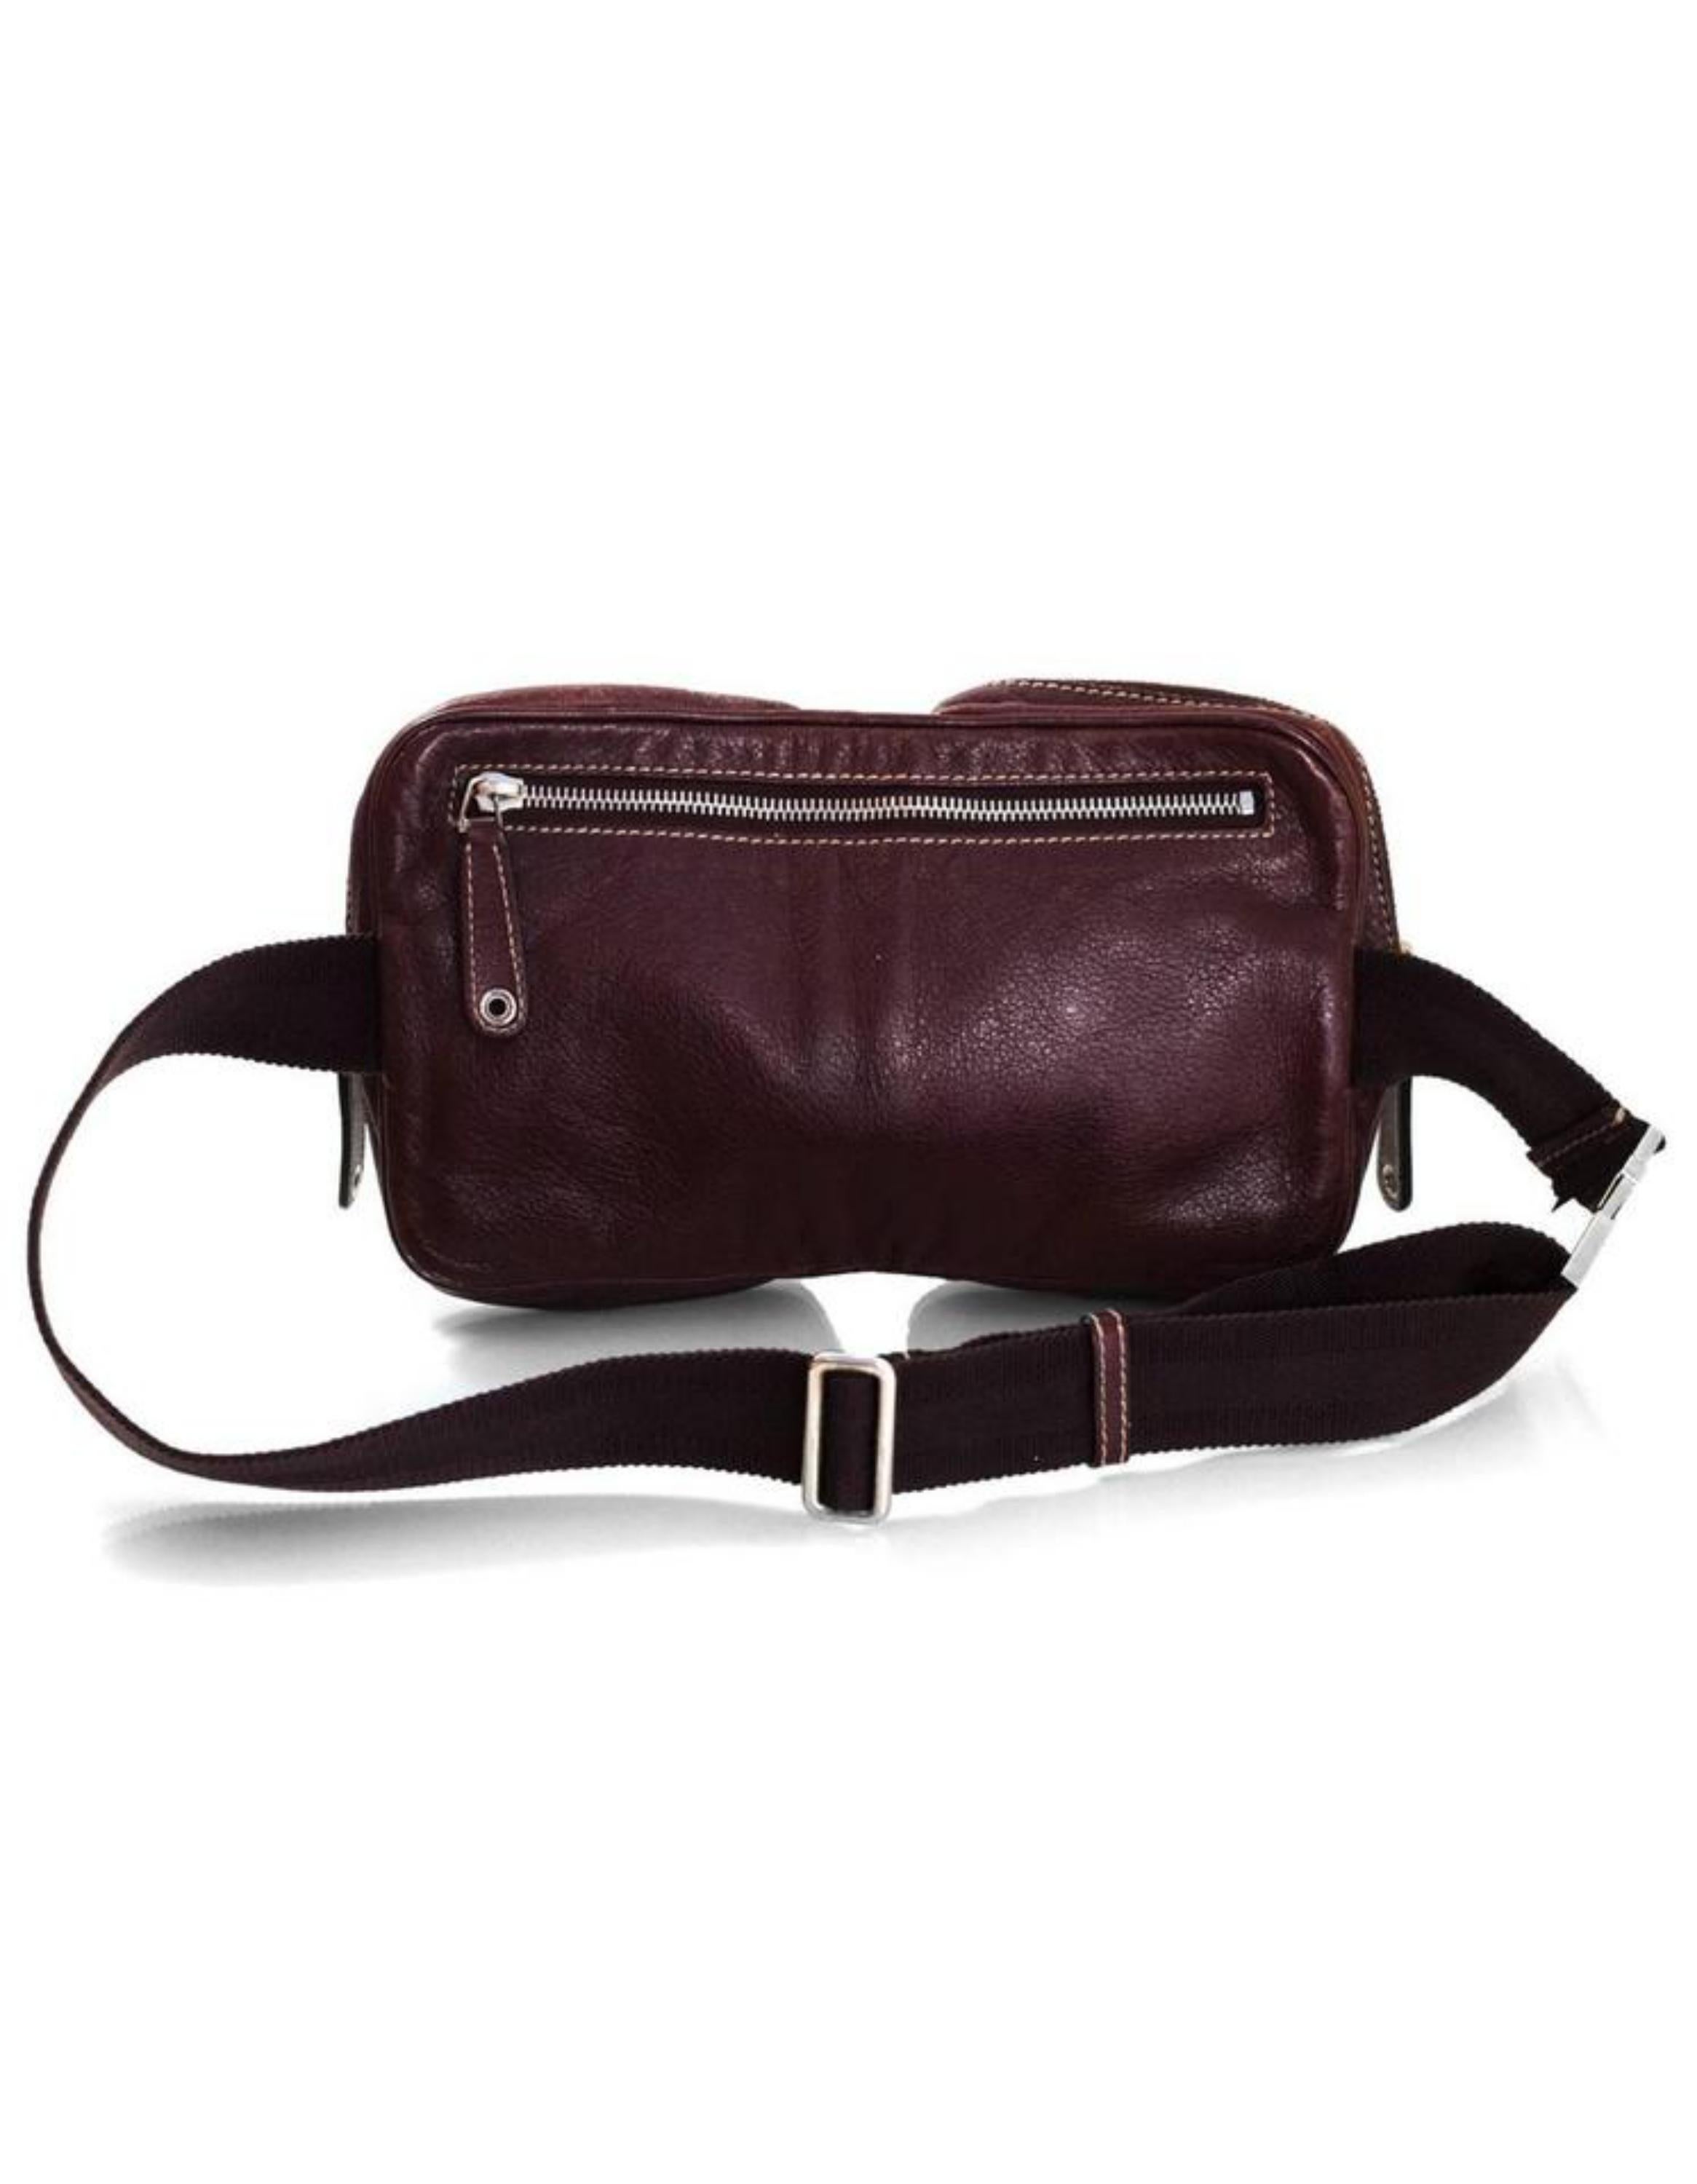 Gucci Waist Belt Pouch 228311 Bordeaux Leather Cross Body Bag For Sale 1